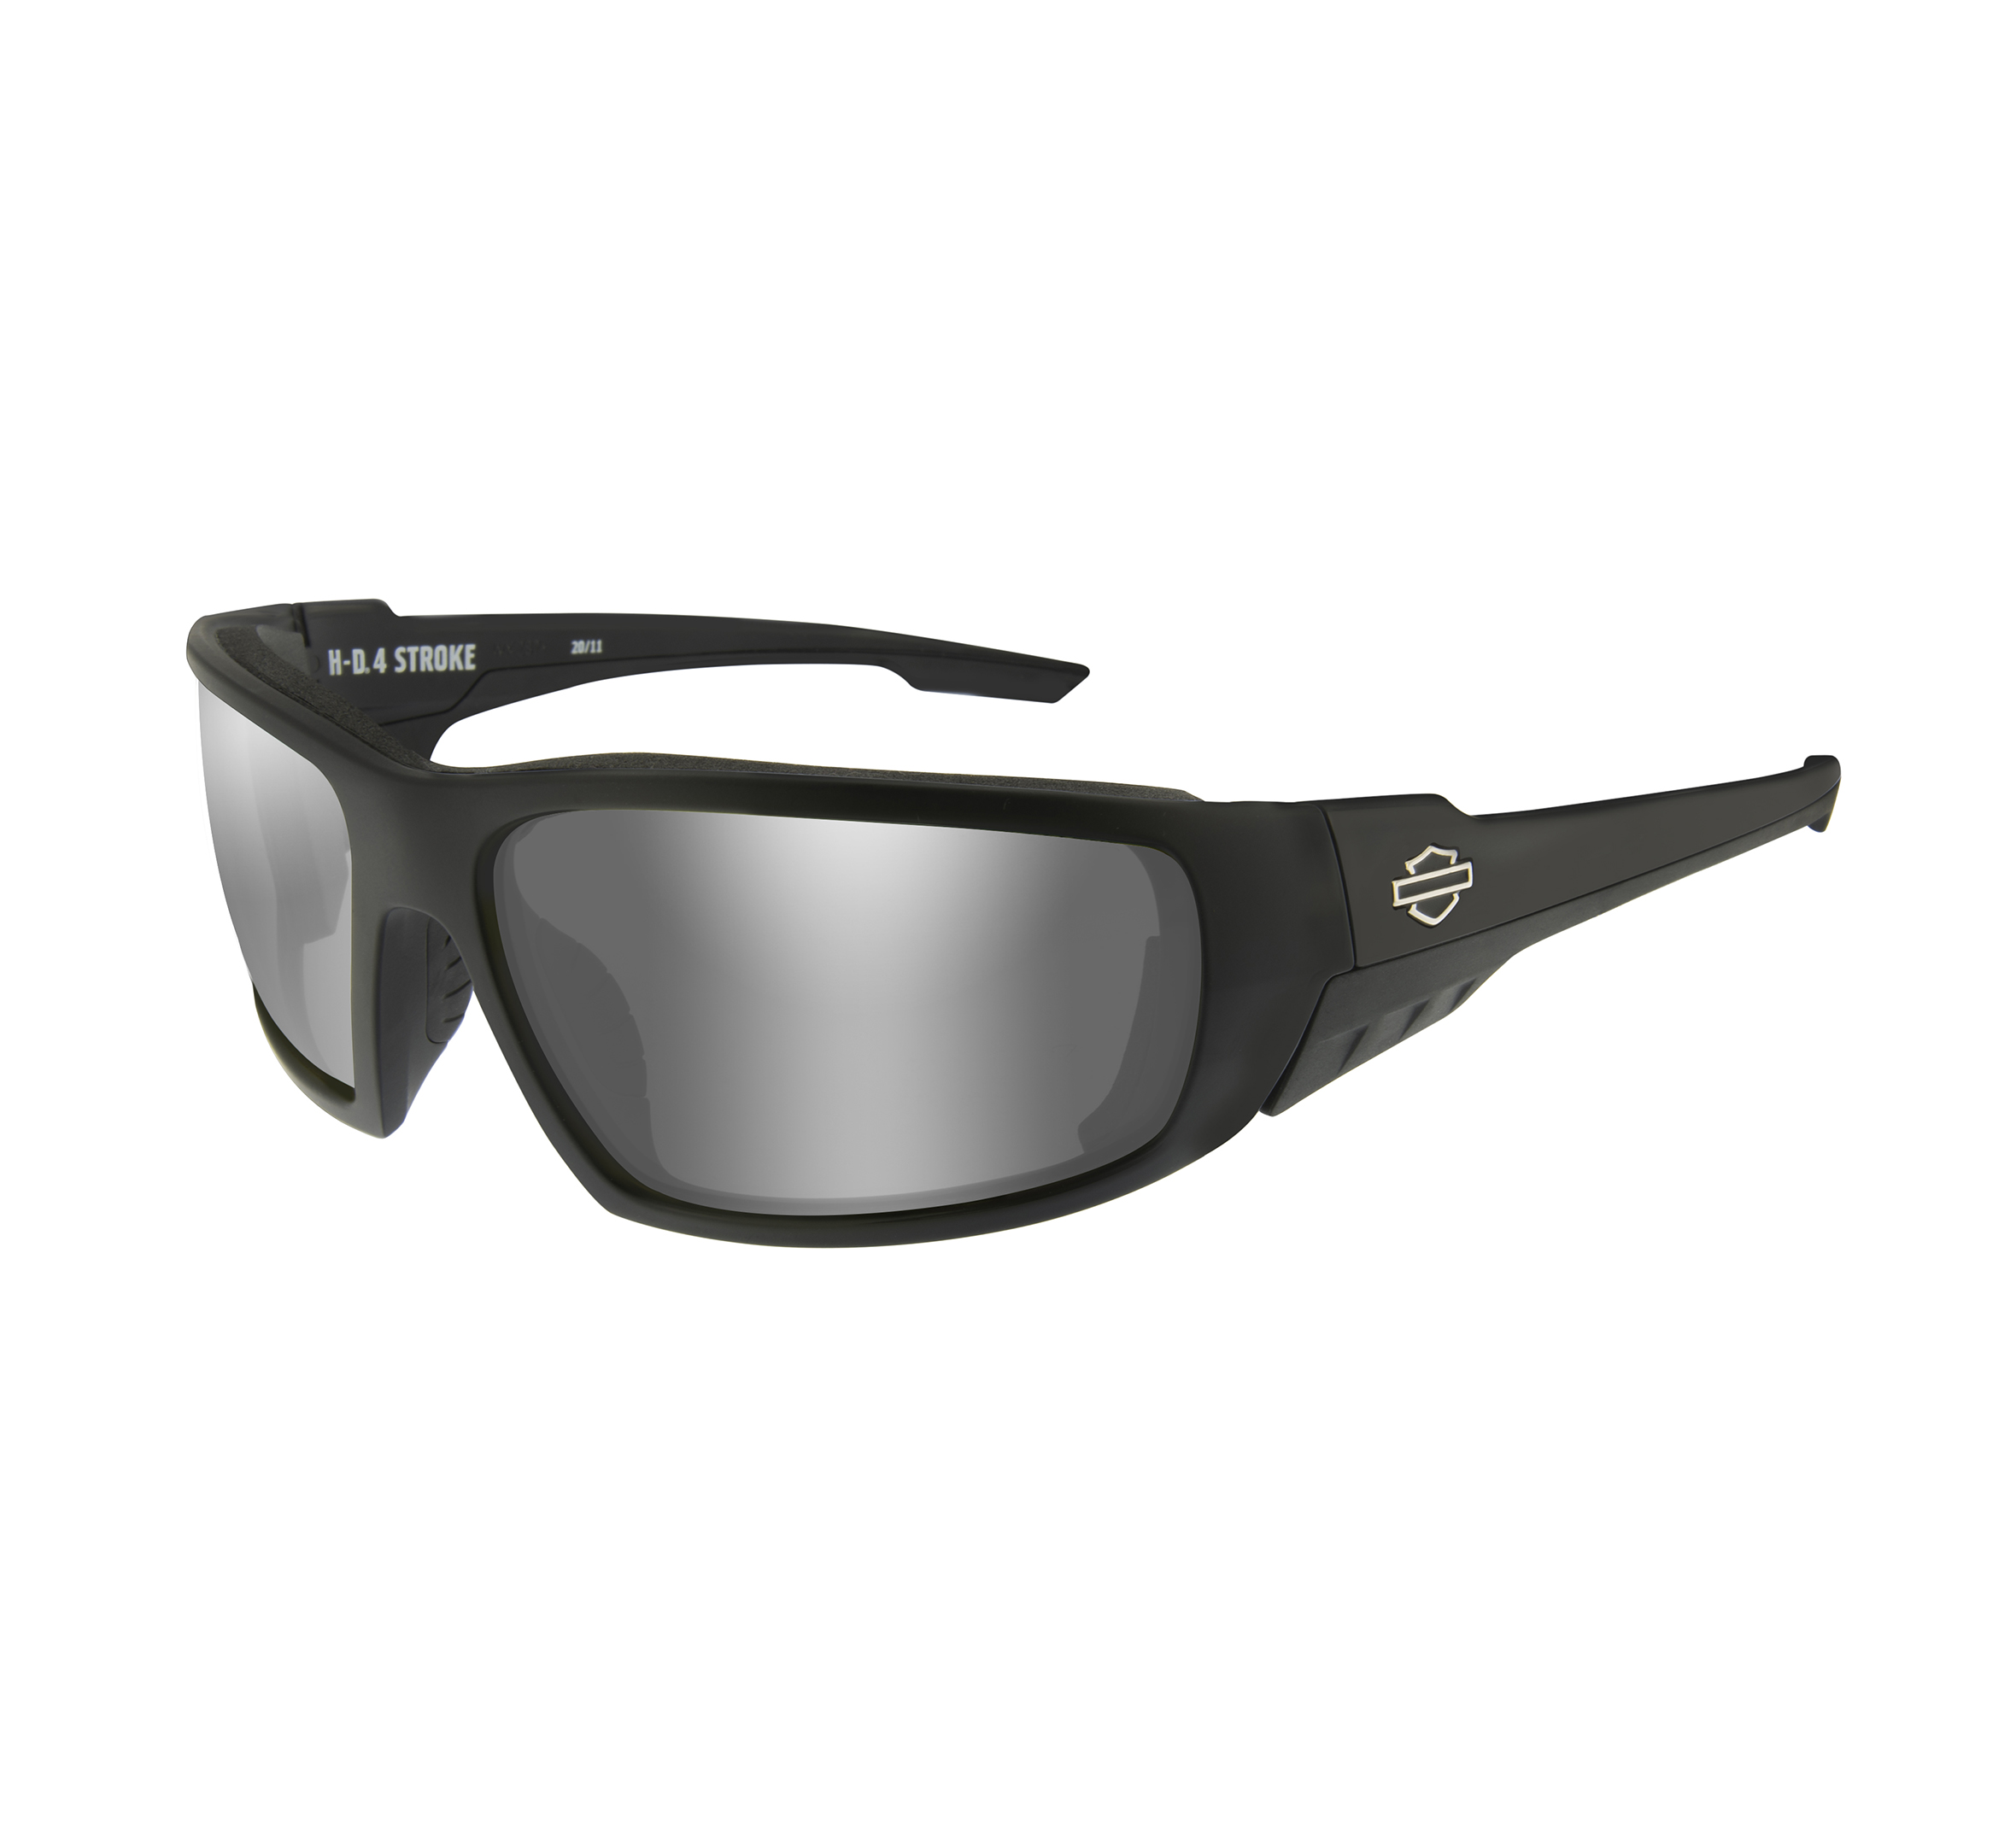 Harley Davidson Gem Sunglasses Womens Light Adjust Grey Lens Blue/Pearl Frame